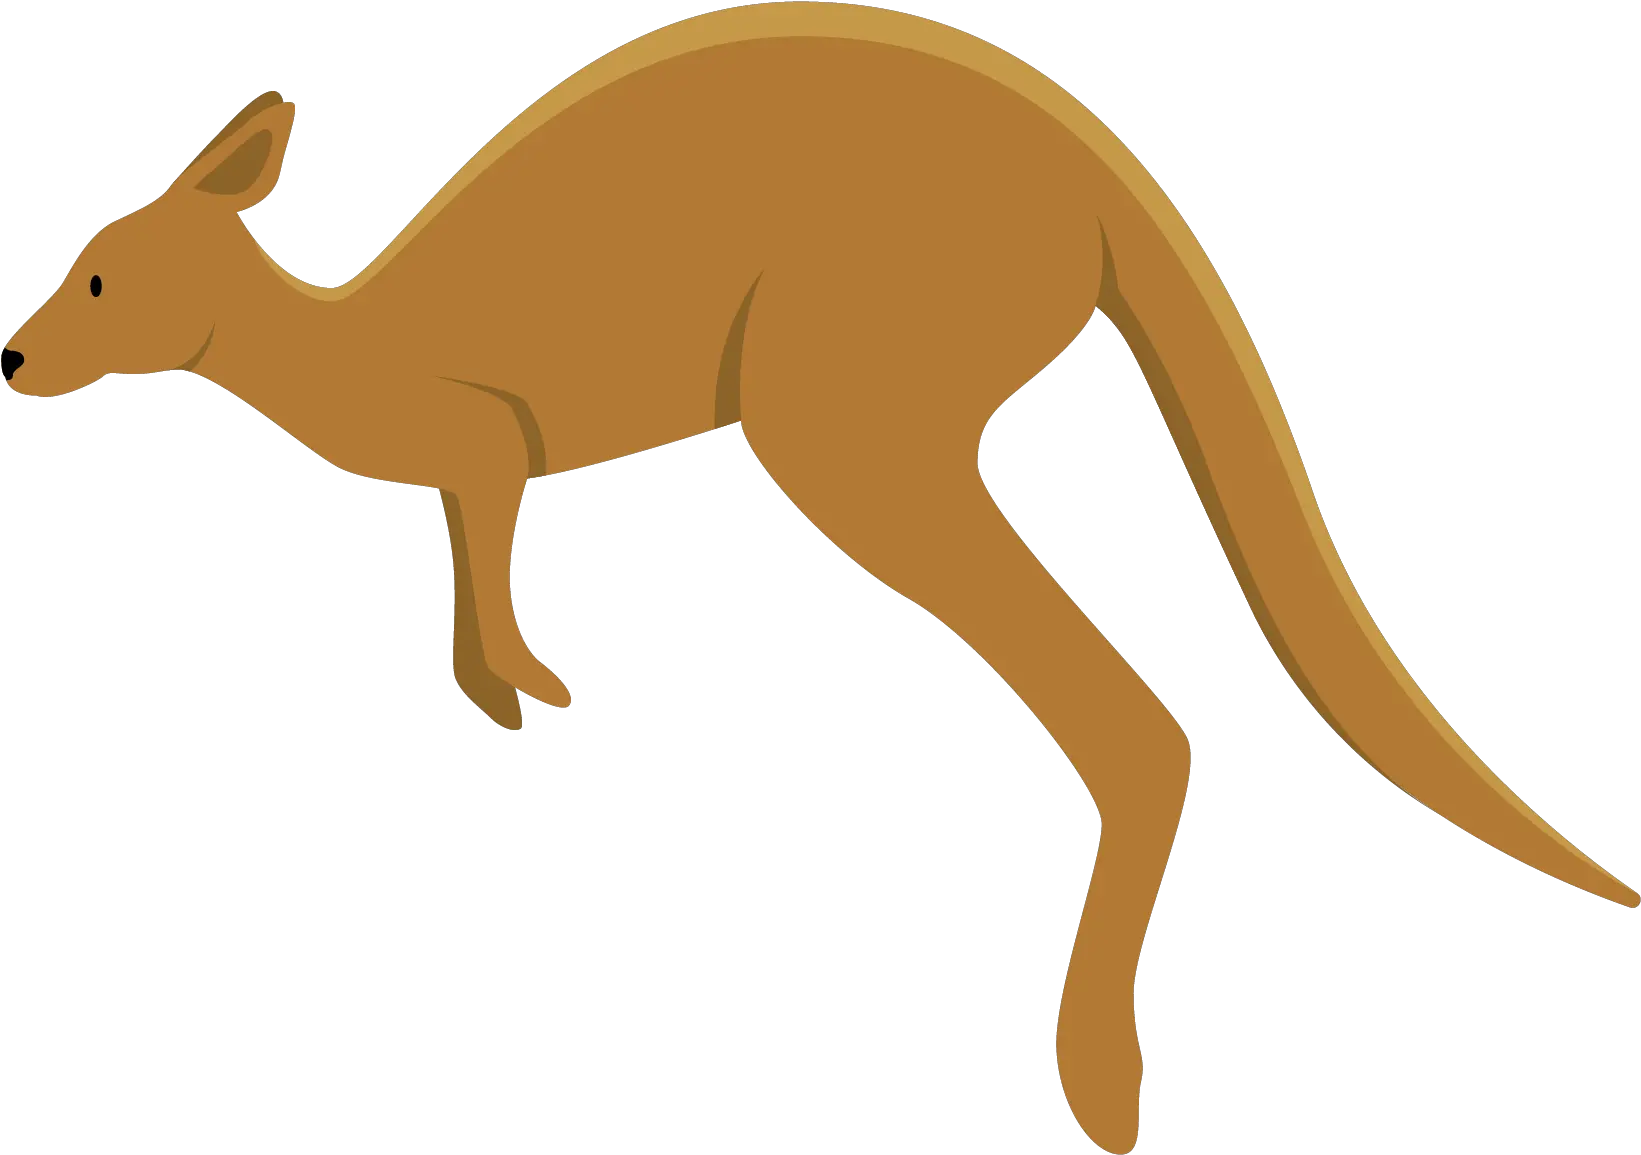 Kangaroo Clipart Transparent Background Png